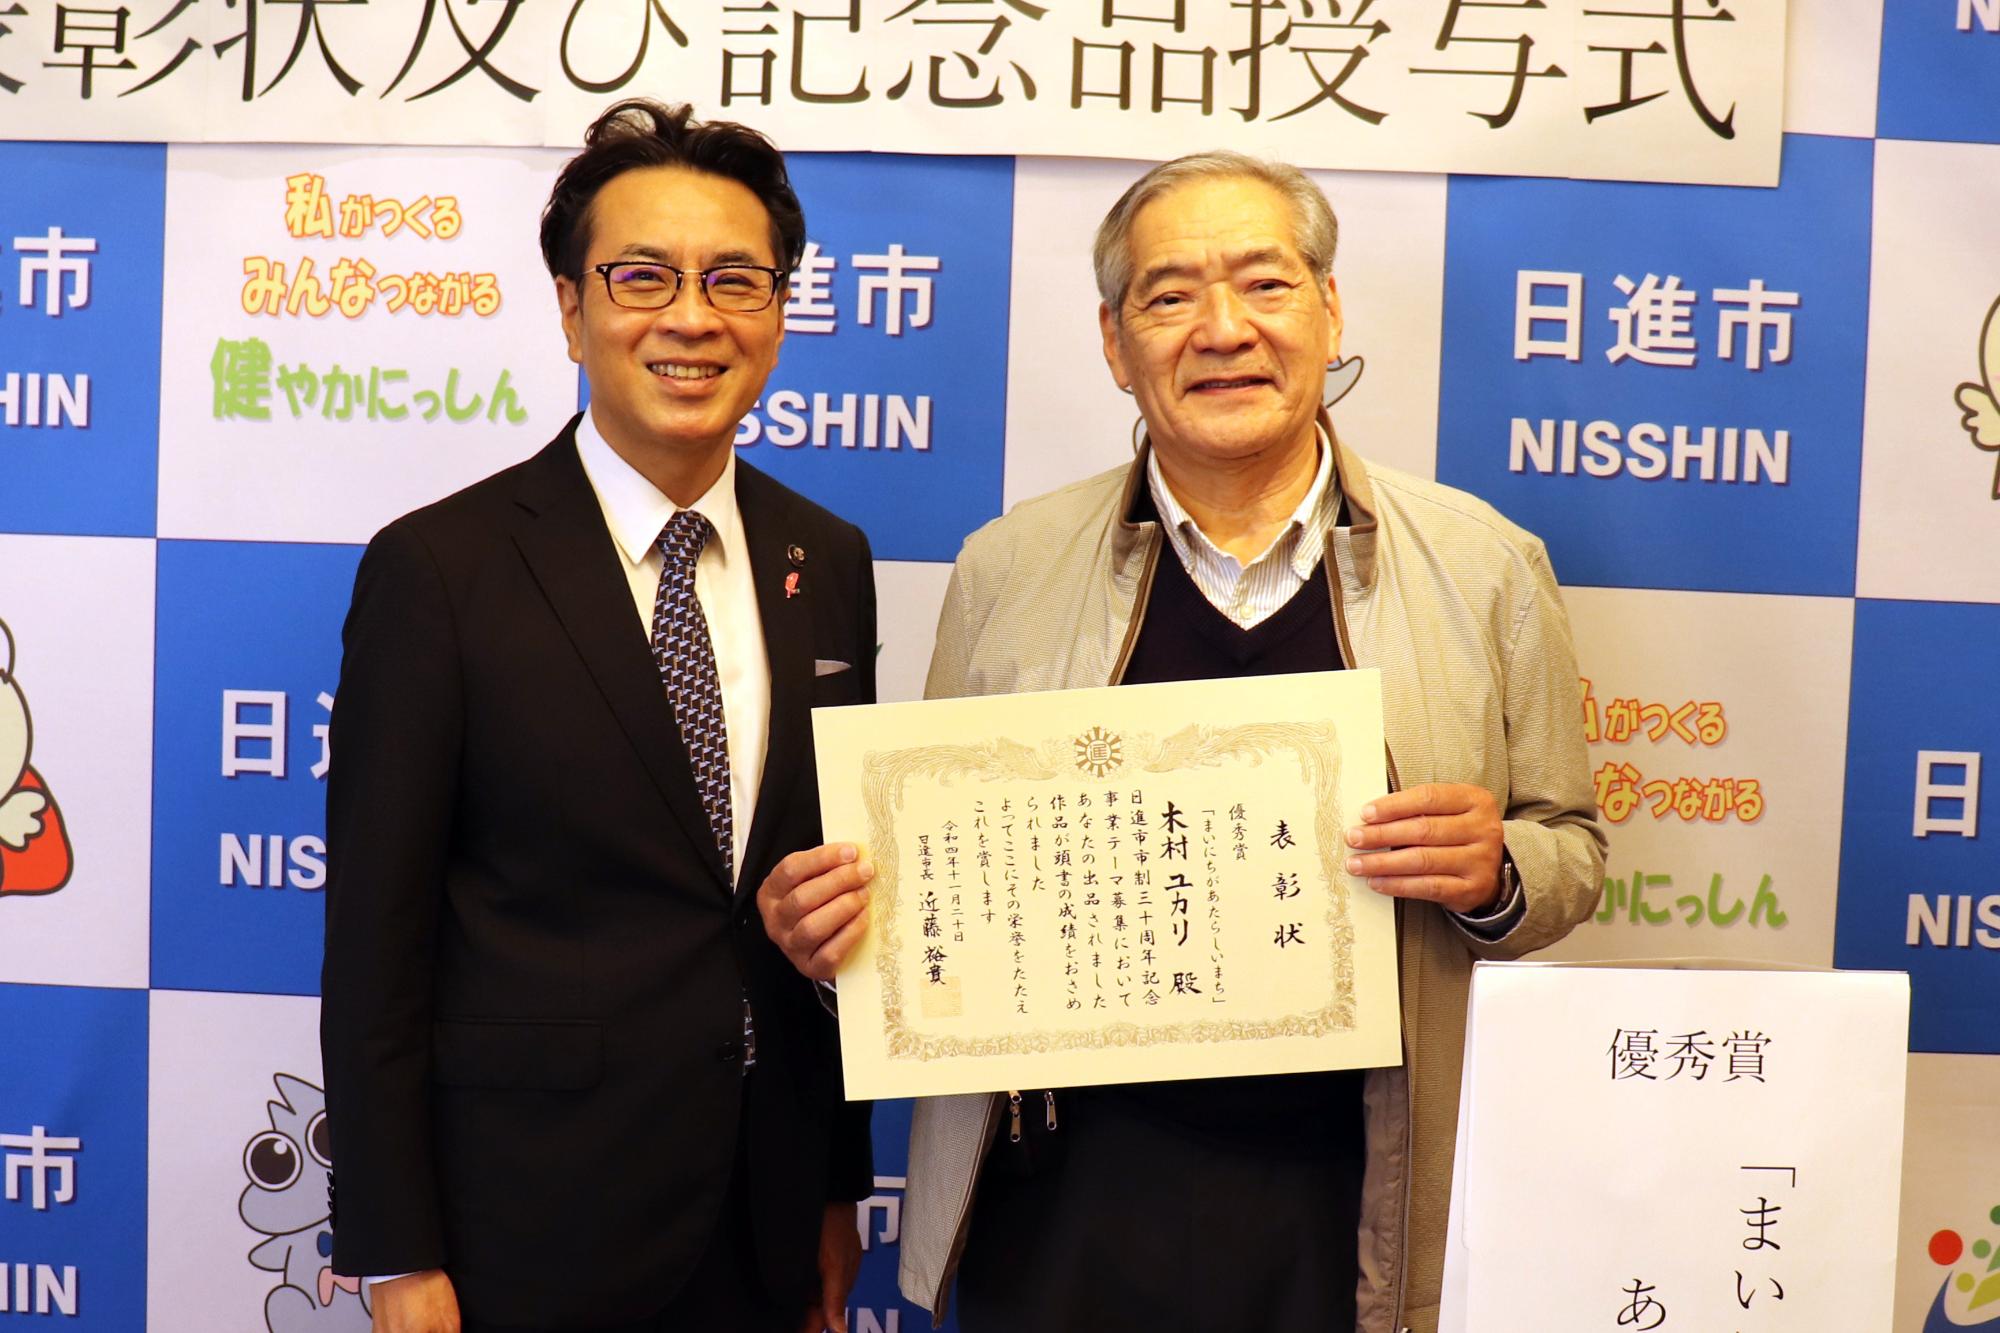 優秀賞を受賞した木村ユカリさんの代理人と記念撮影をする近藤市長